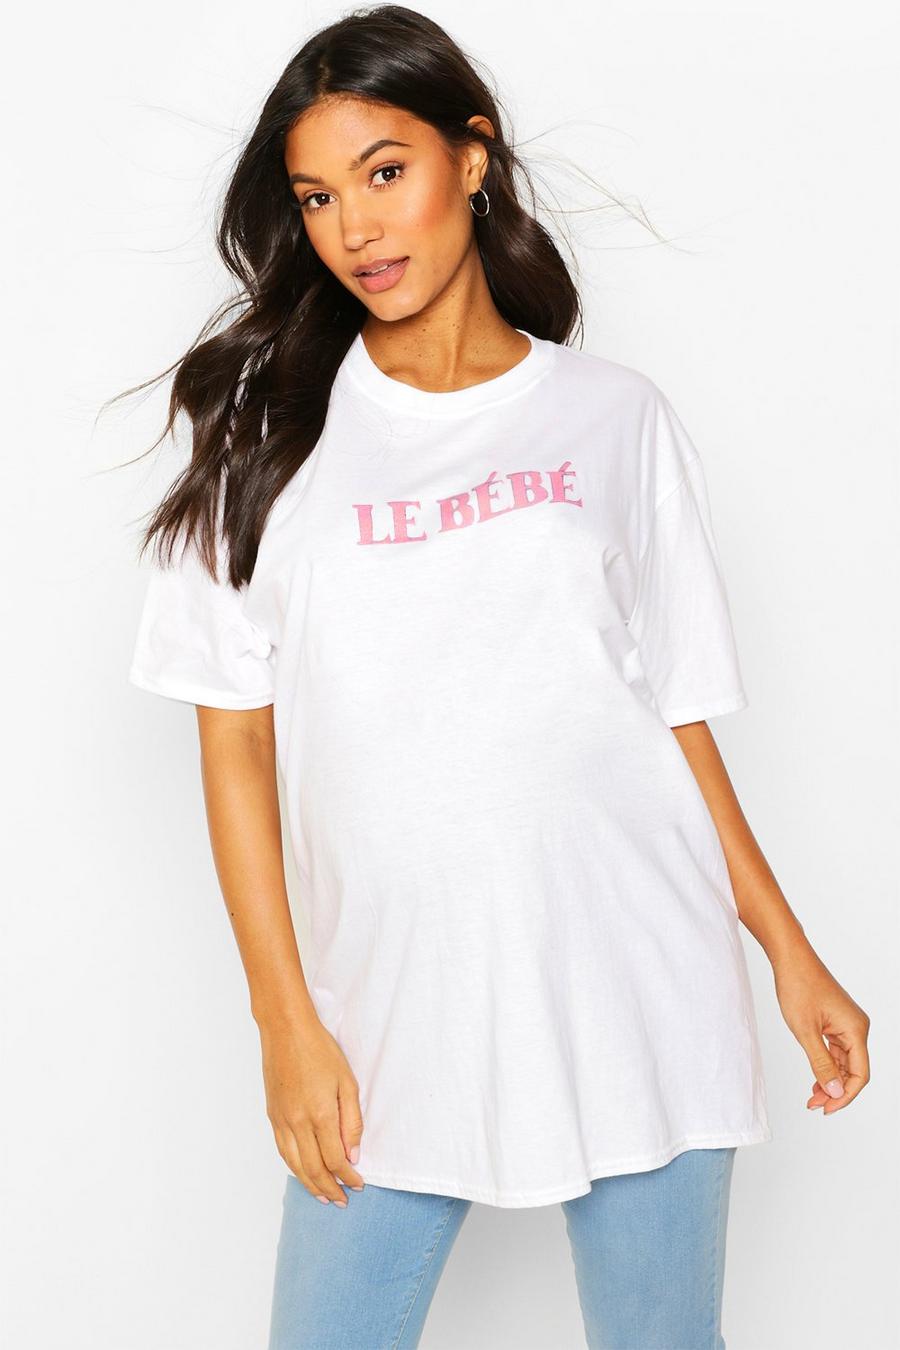 Camiseta con slogan “Le Bebe” Ropa Premamá image number 1